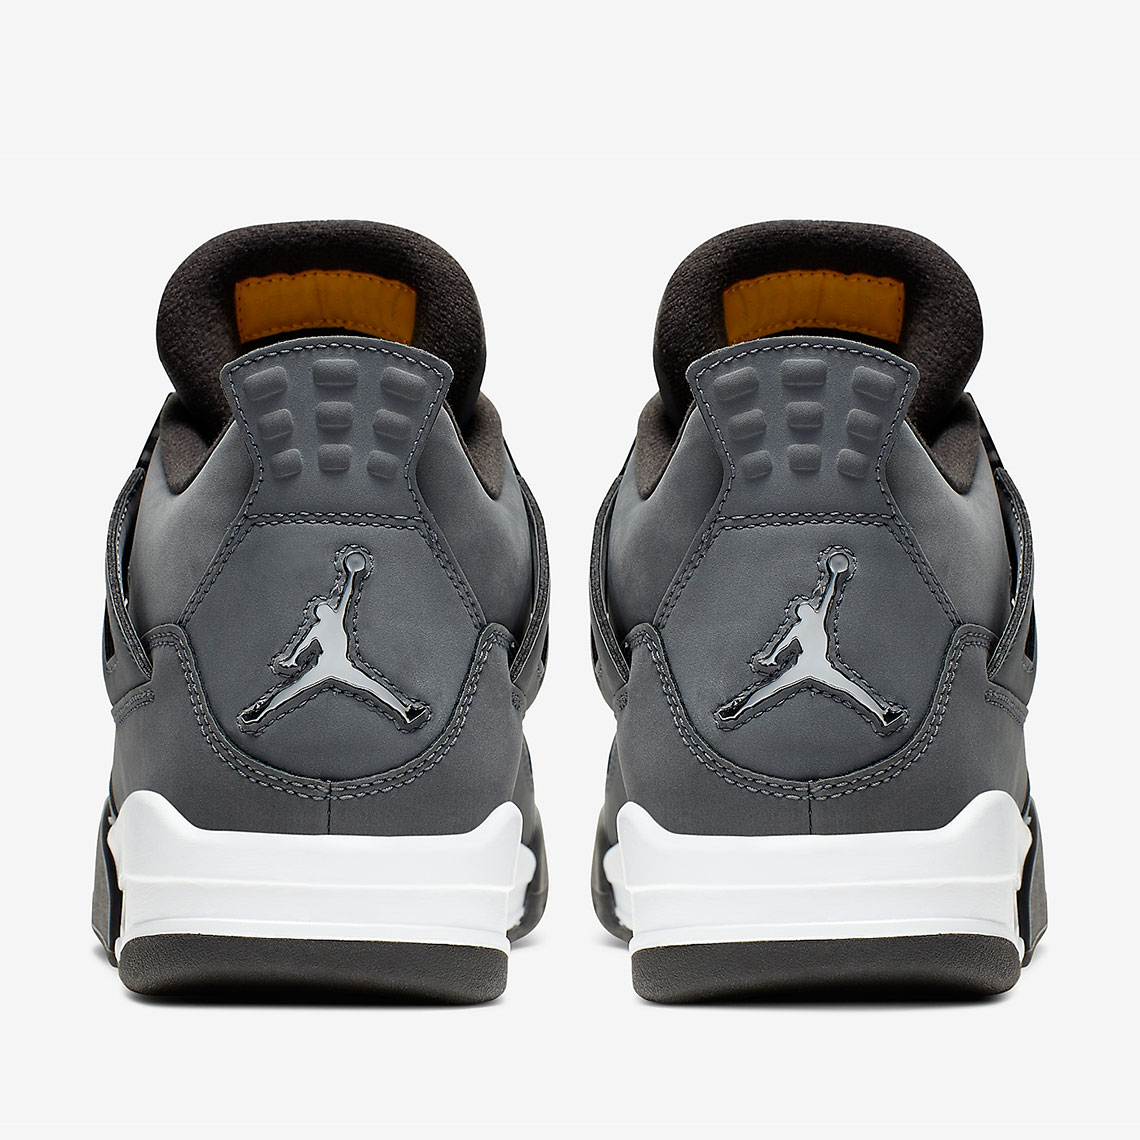 Air Jordan 4 &quot;Cool Grey&quot; Officially Drops Tomorrow: How To Cop